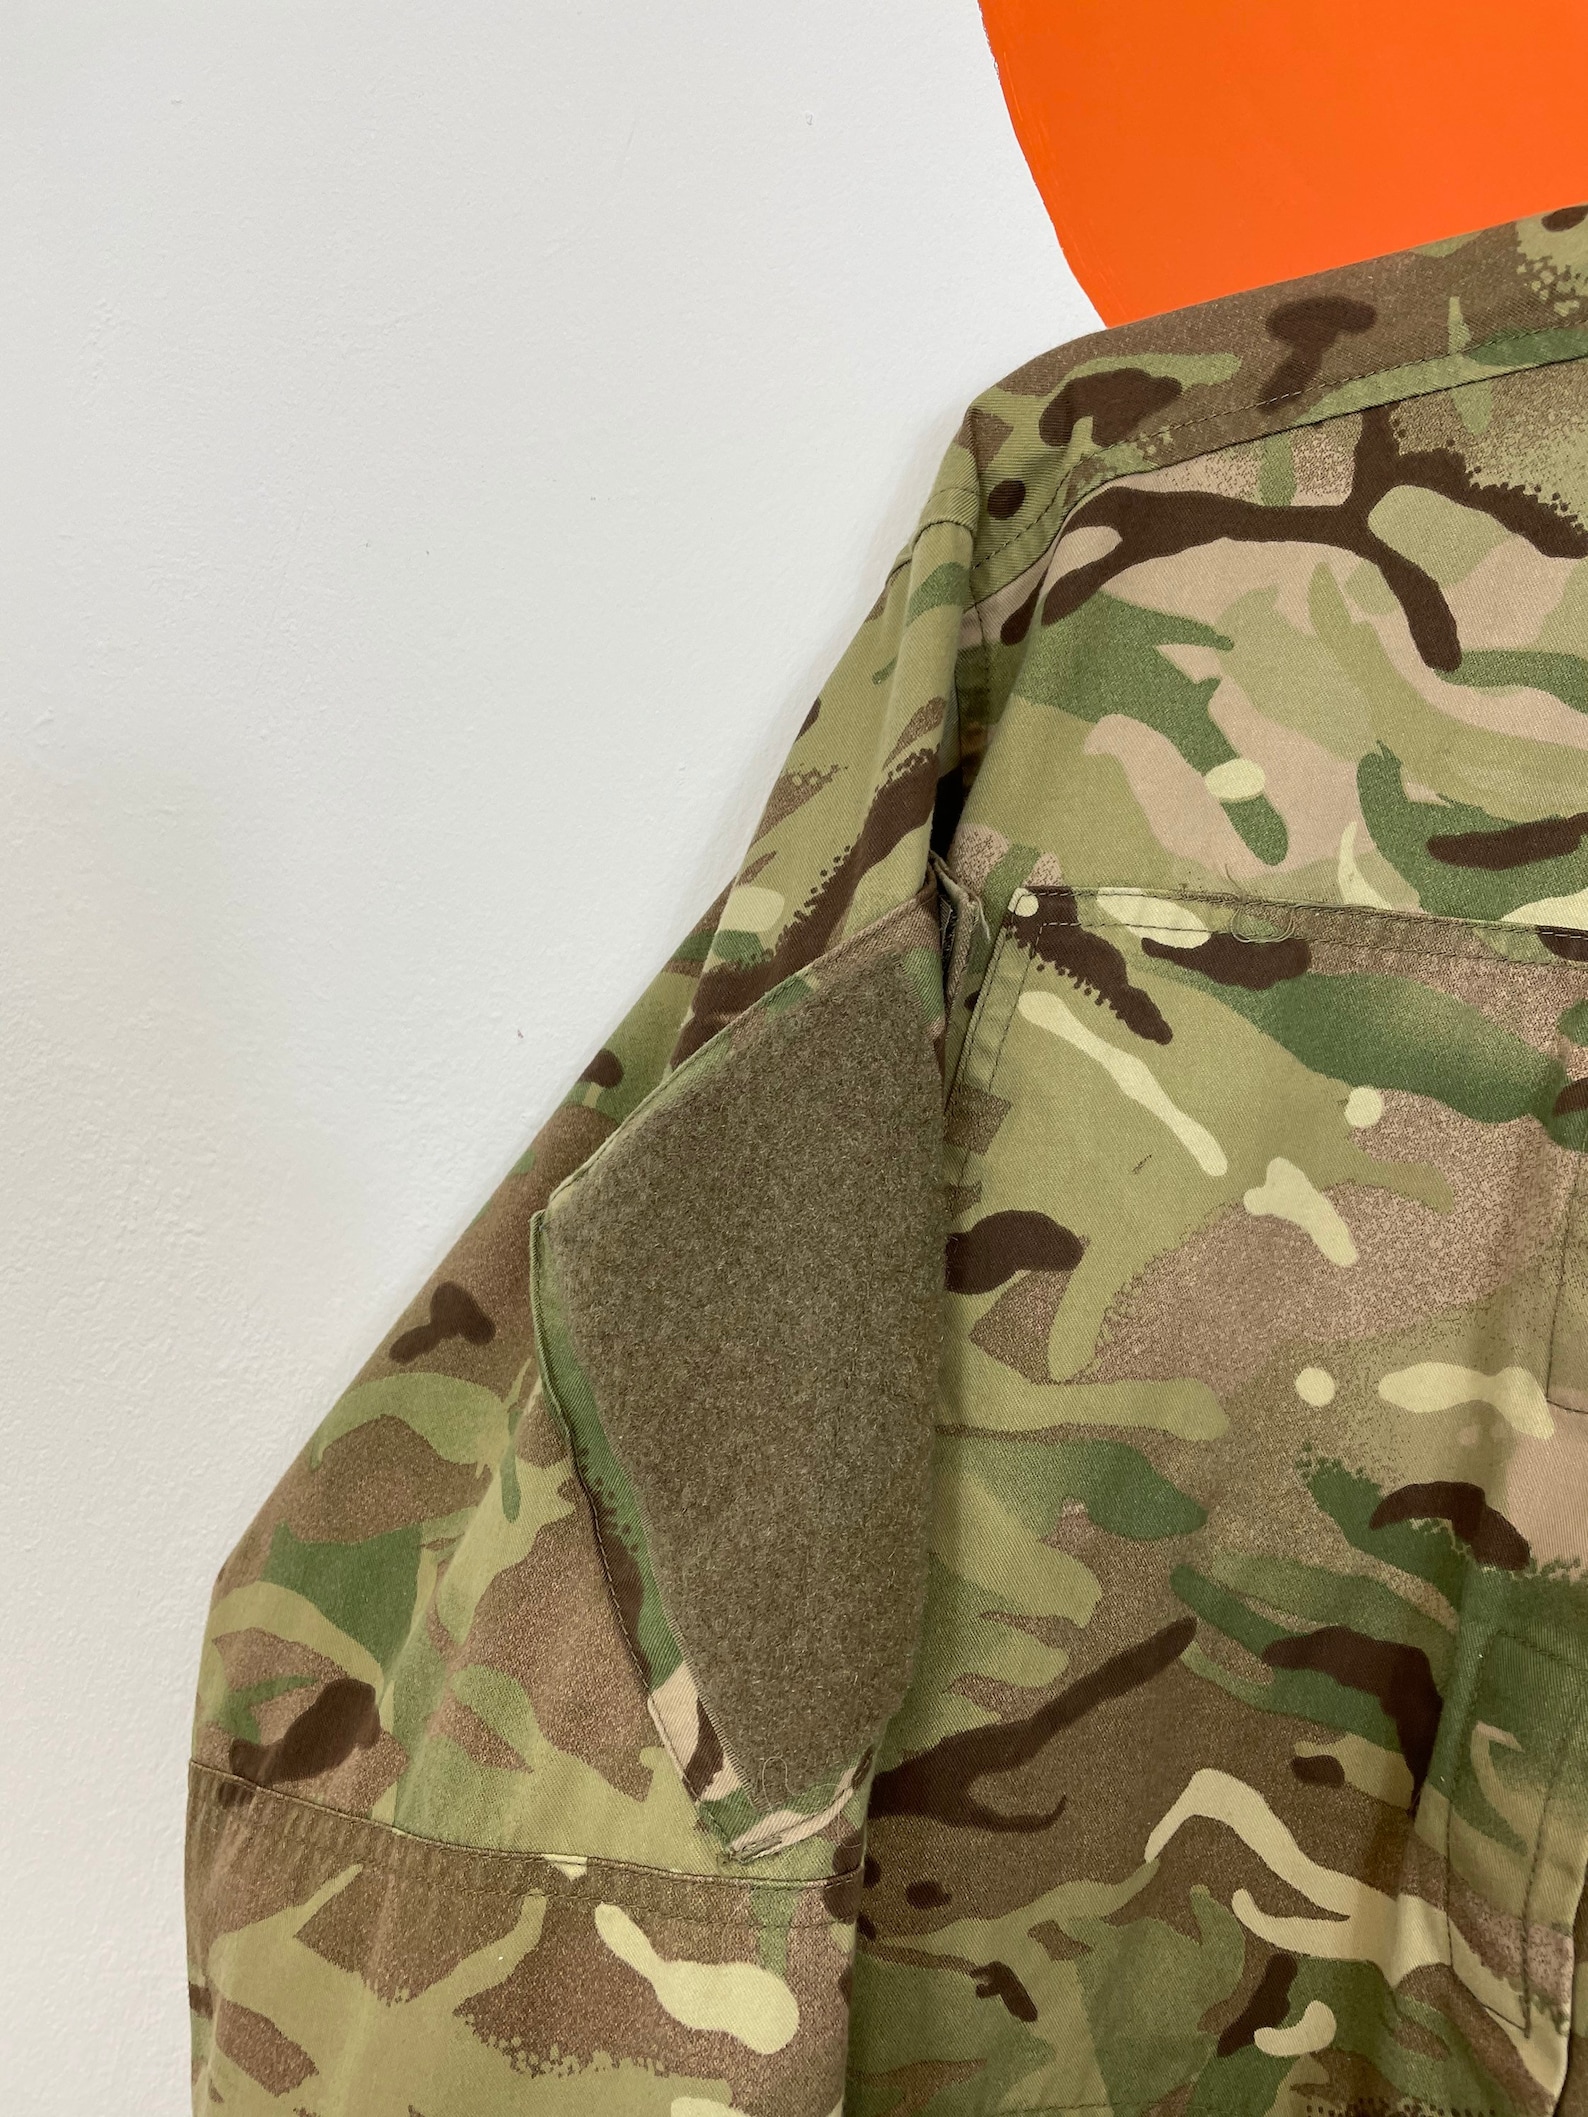 Men's Vintage Army Camouflage Camo Shacket Jacket Green UK | Etsy